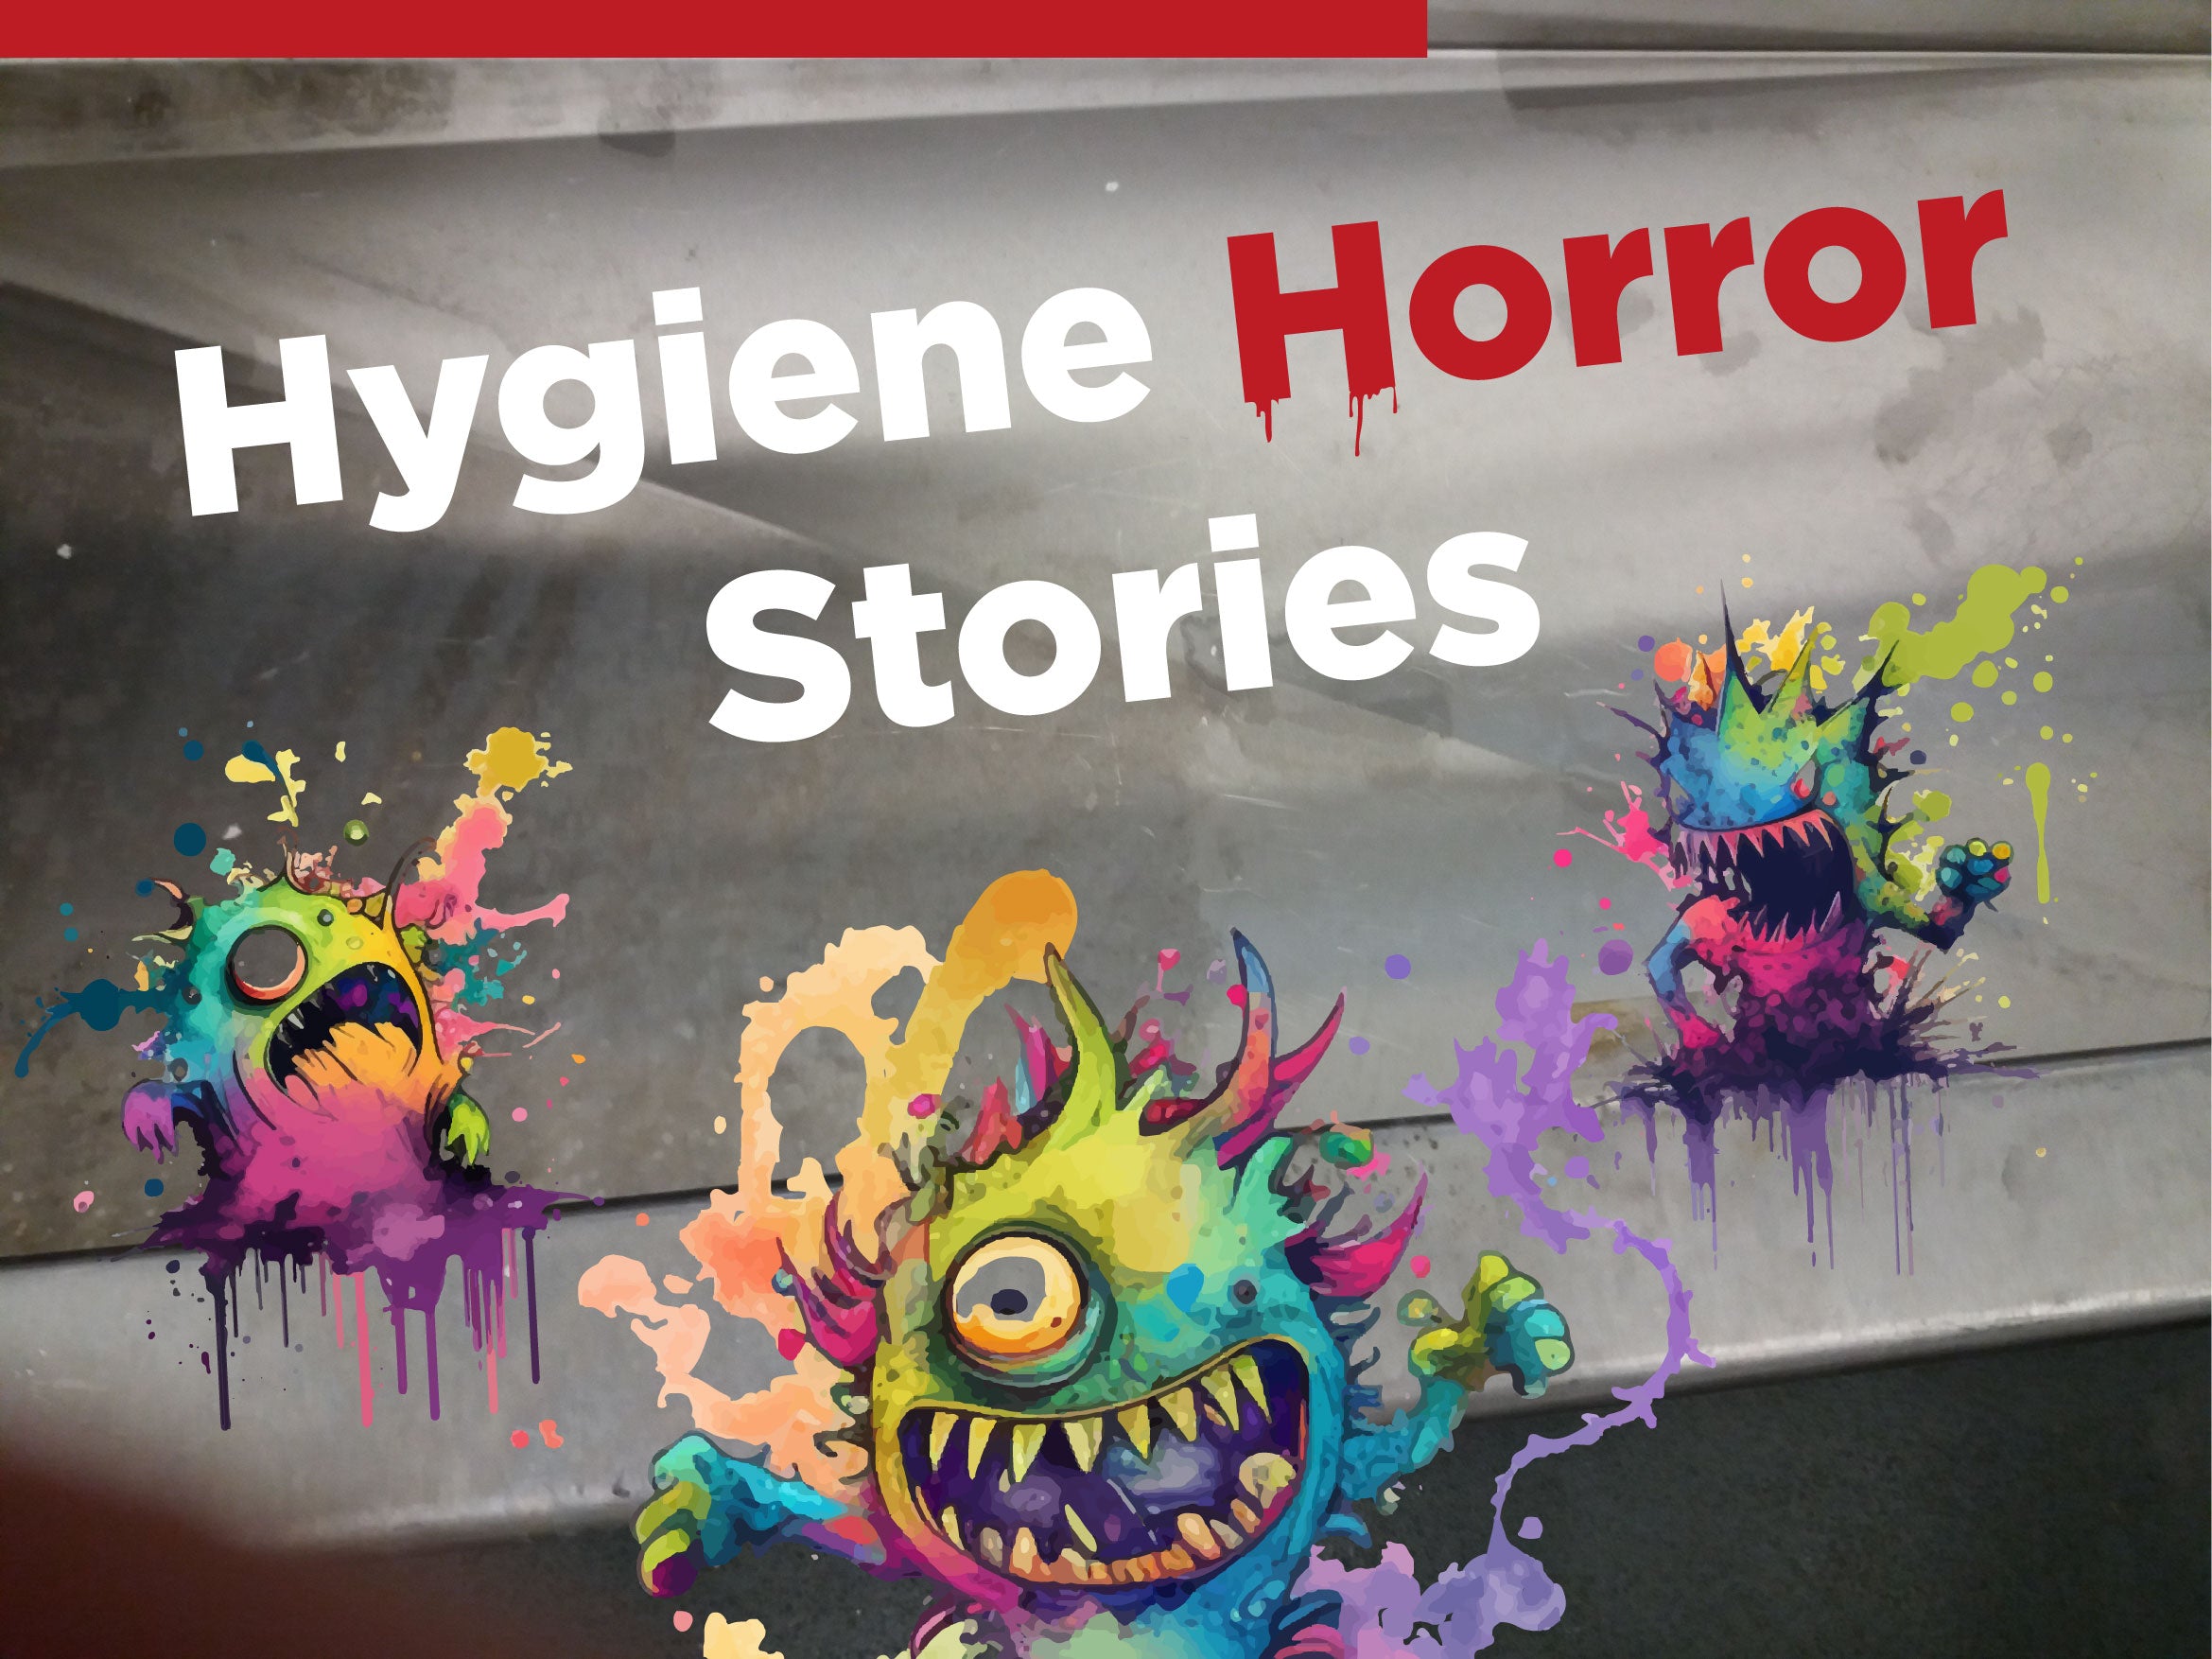 Hygiene Horror Stories